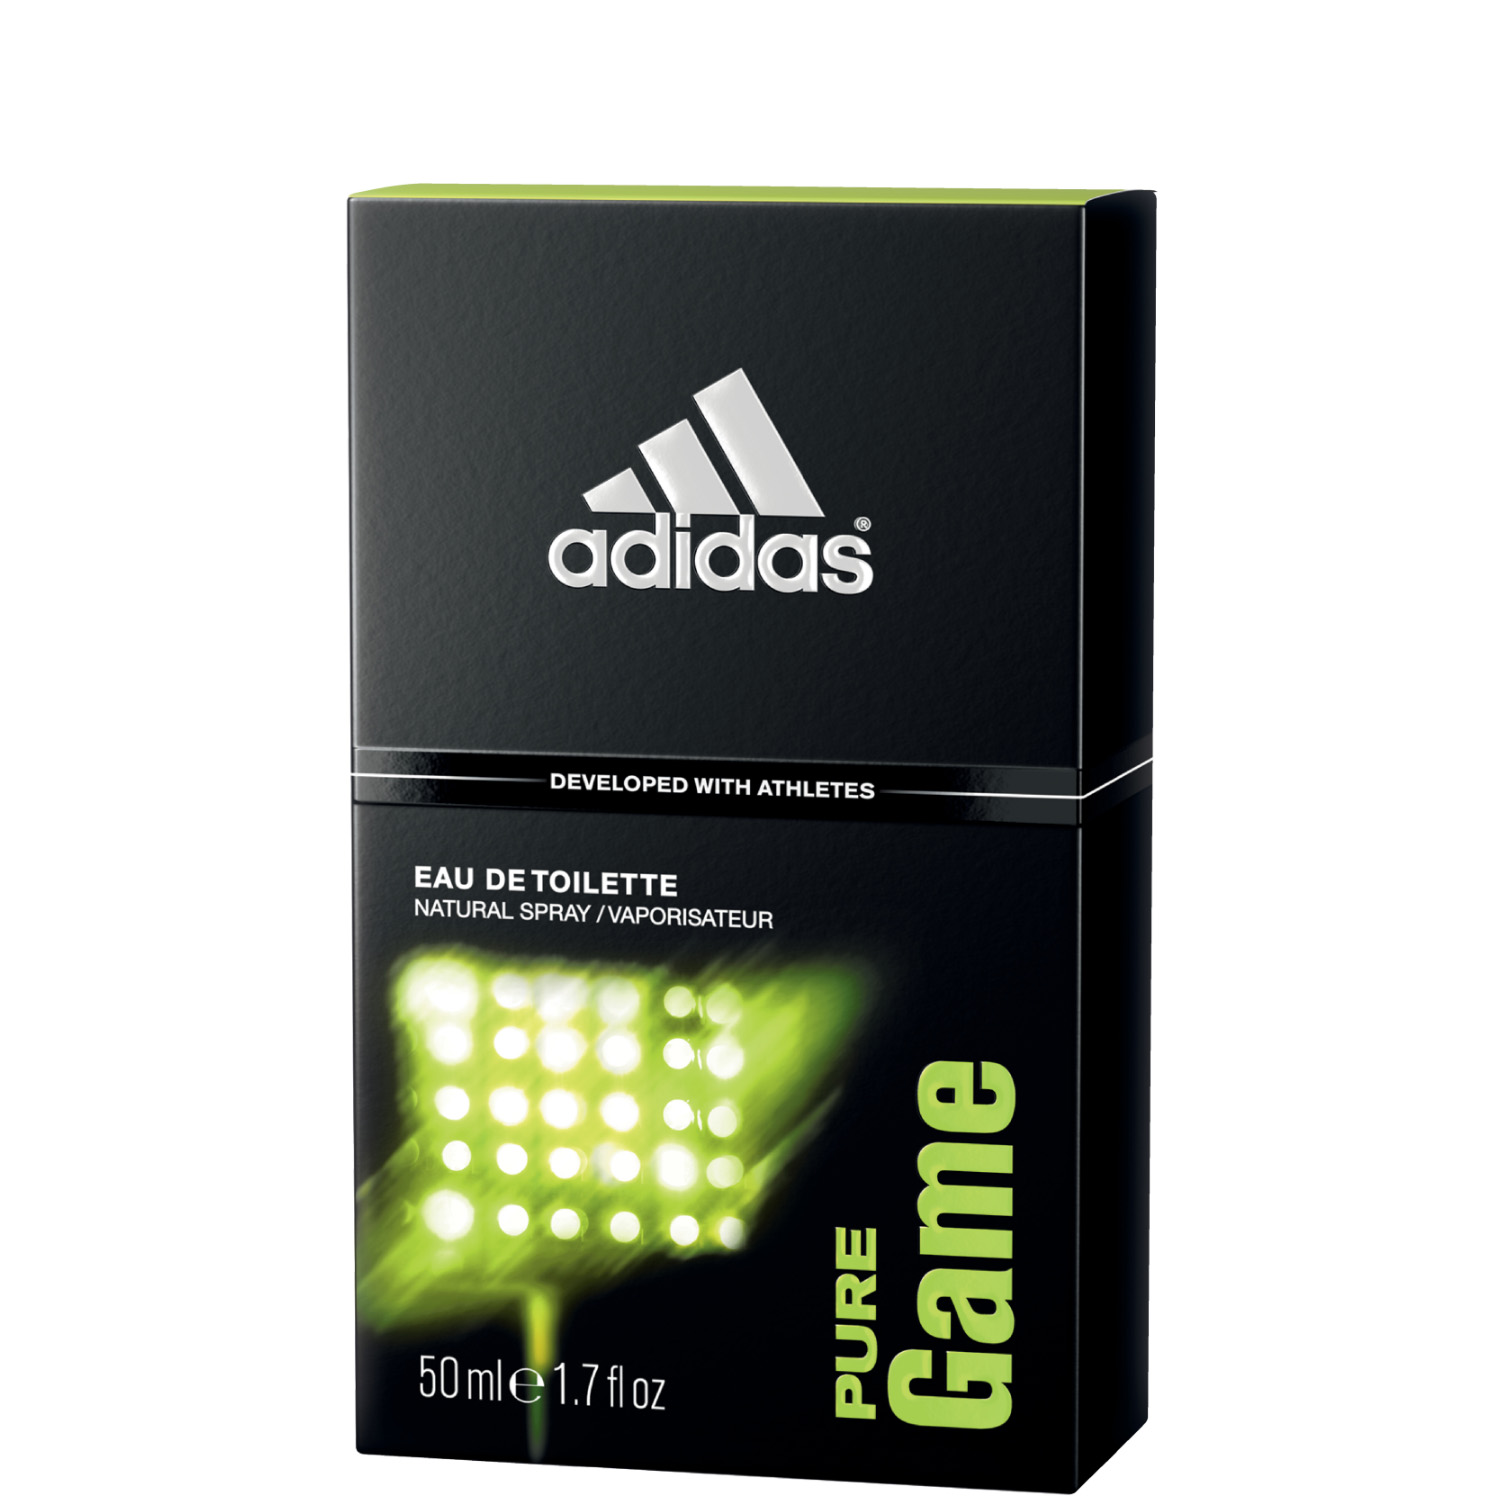 Adidas Pure Game Eau de Toilette 50ml